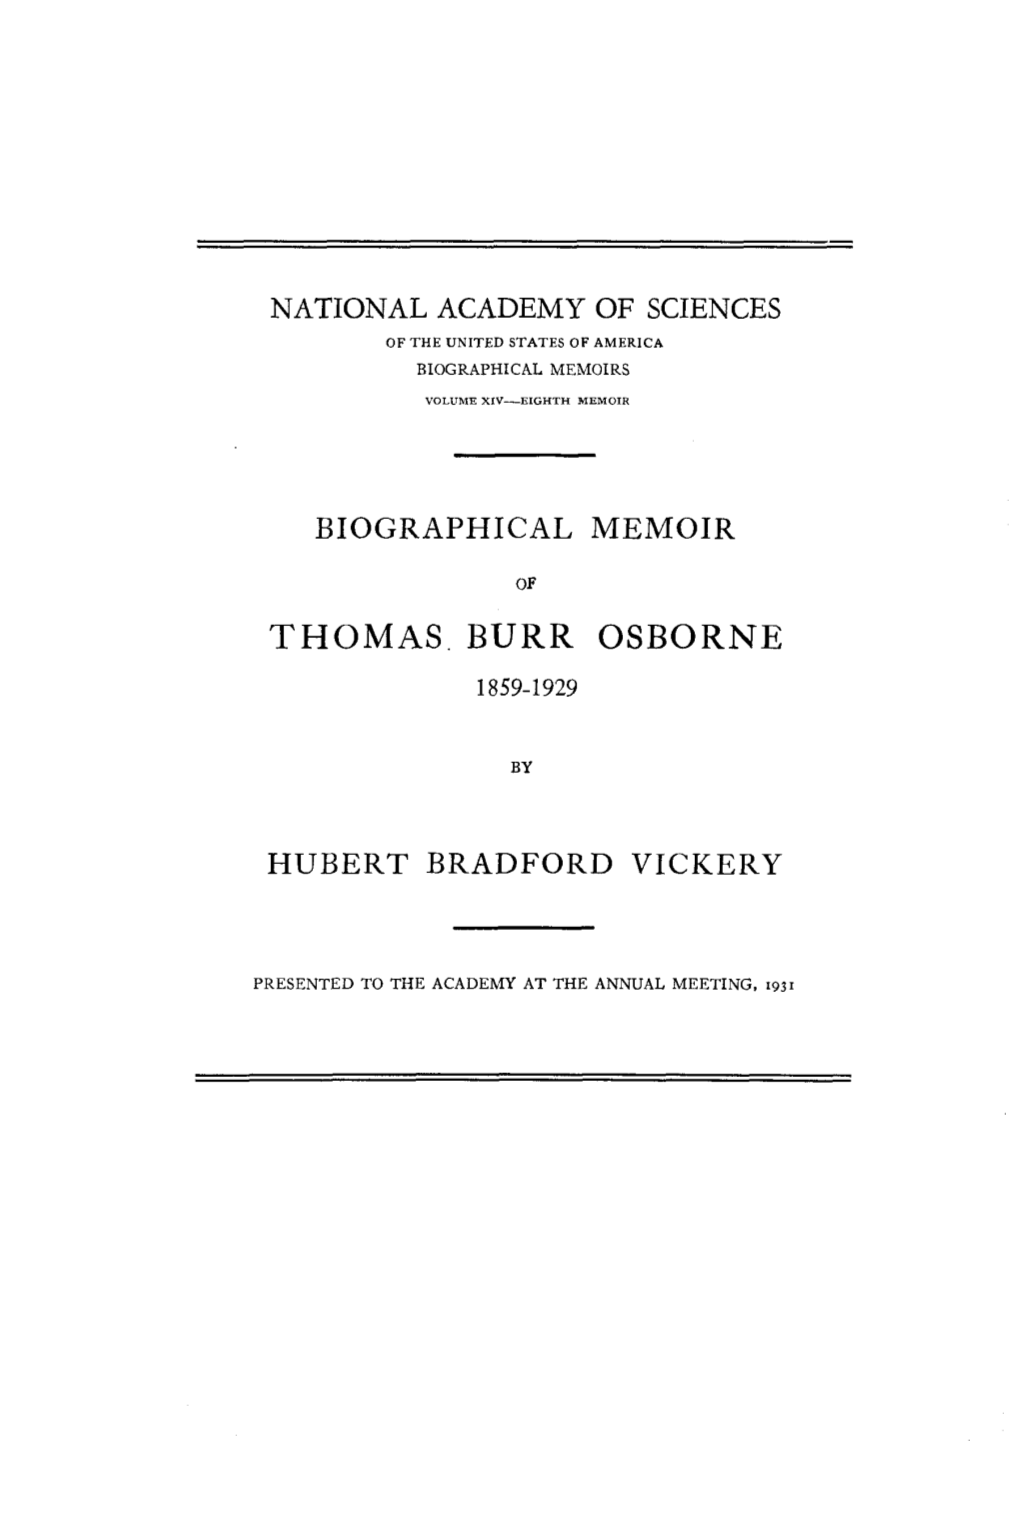 Thomas Burr Osborne 1859-1929